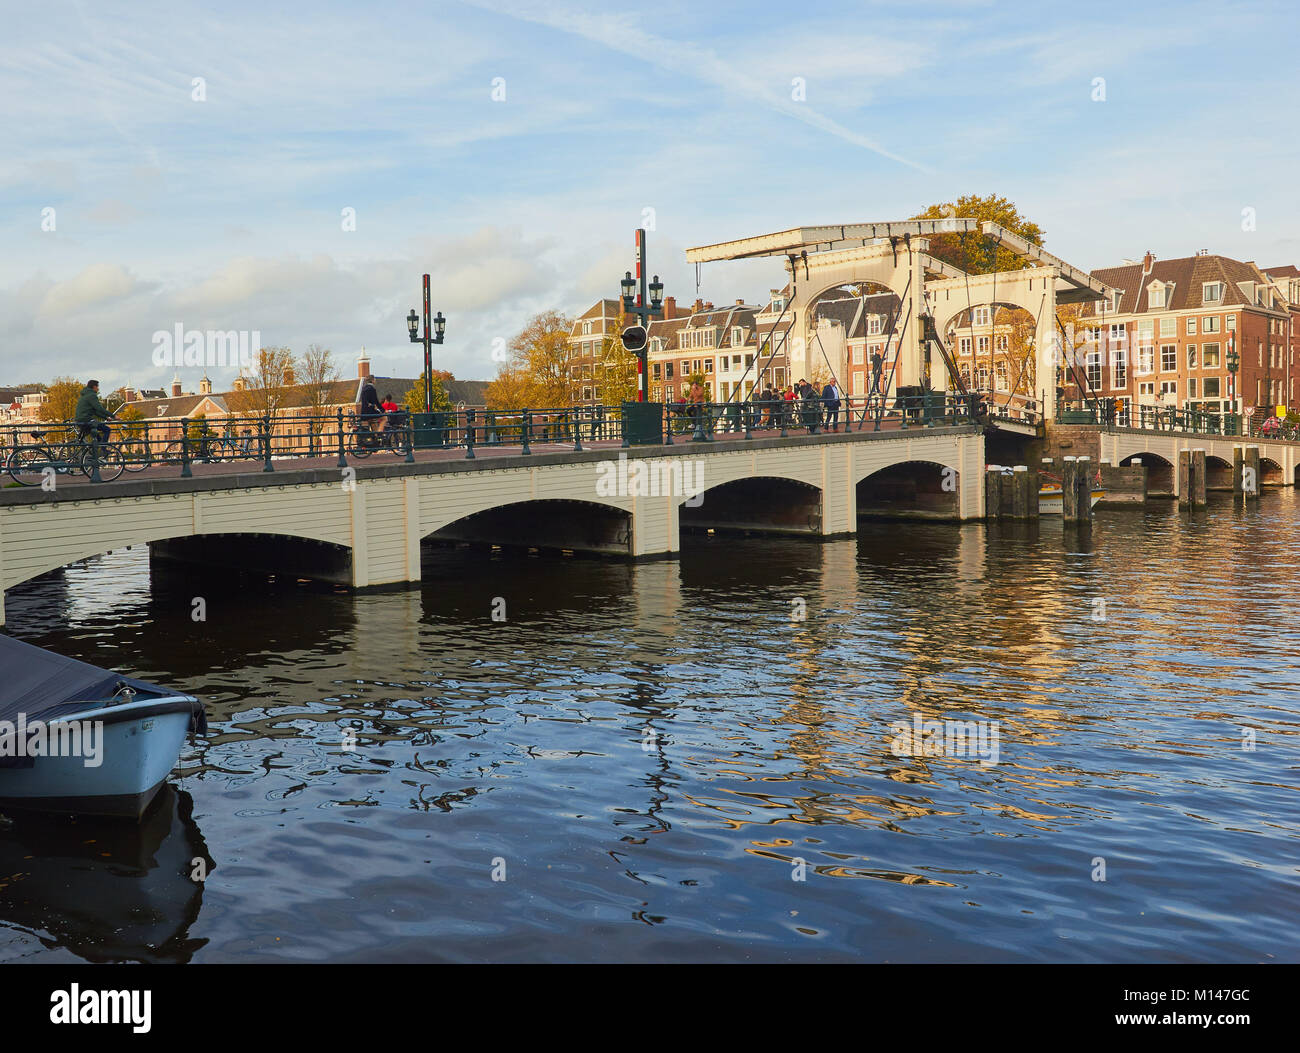 Magere Brug (skinny bridge) una bicicletta pedonale ponte mobile sul fiume Amstel di Amsterdam, Paesi Bassi Foto Stock